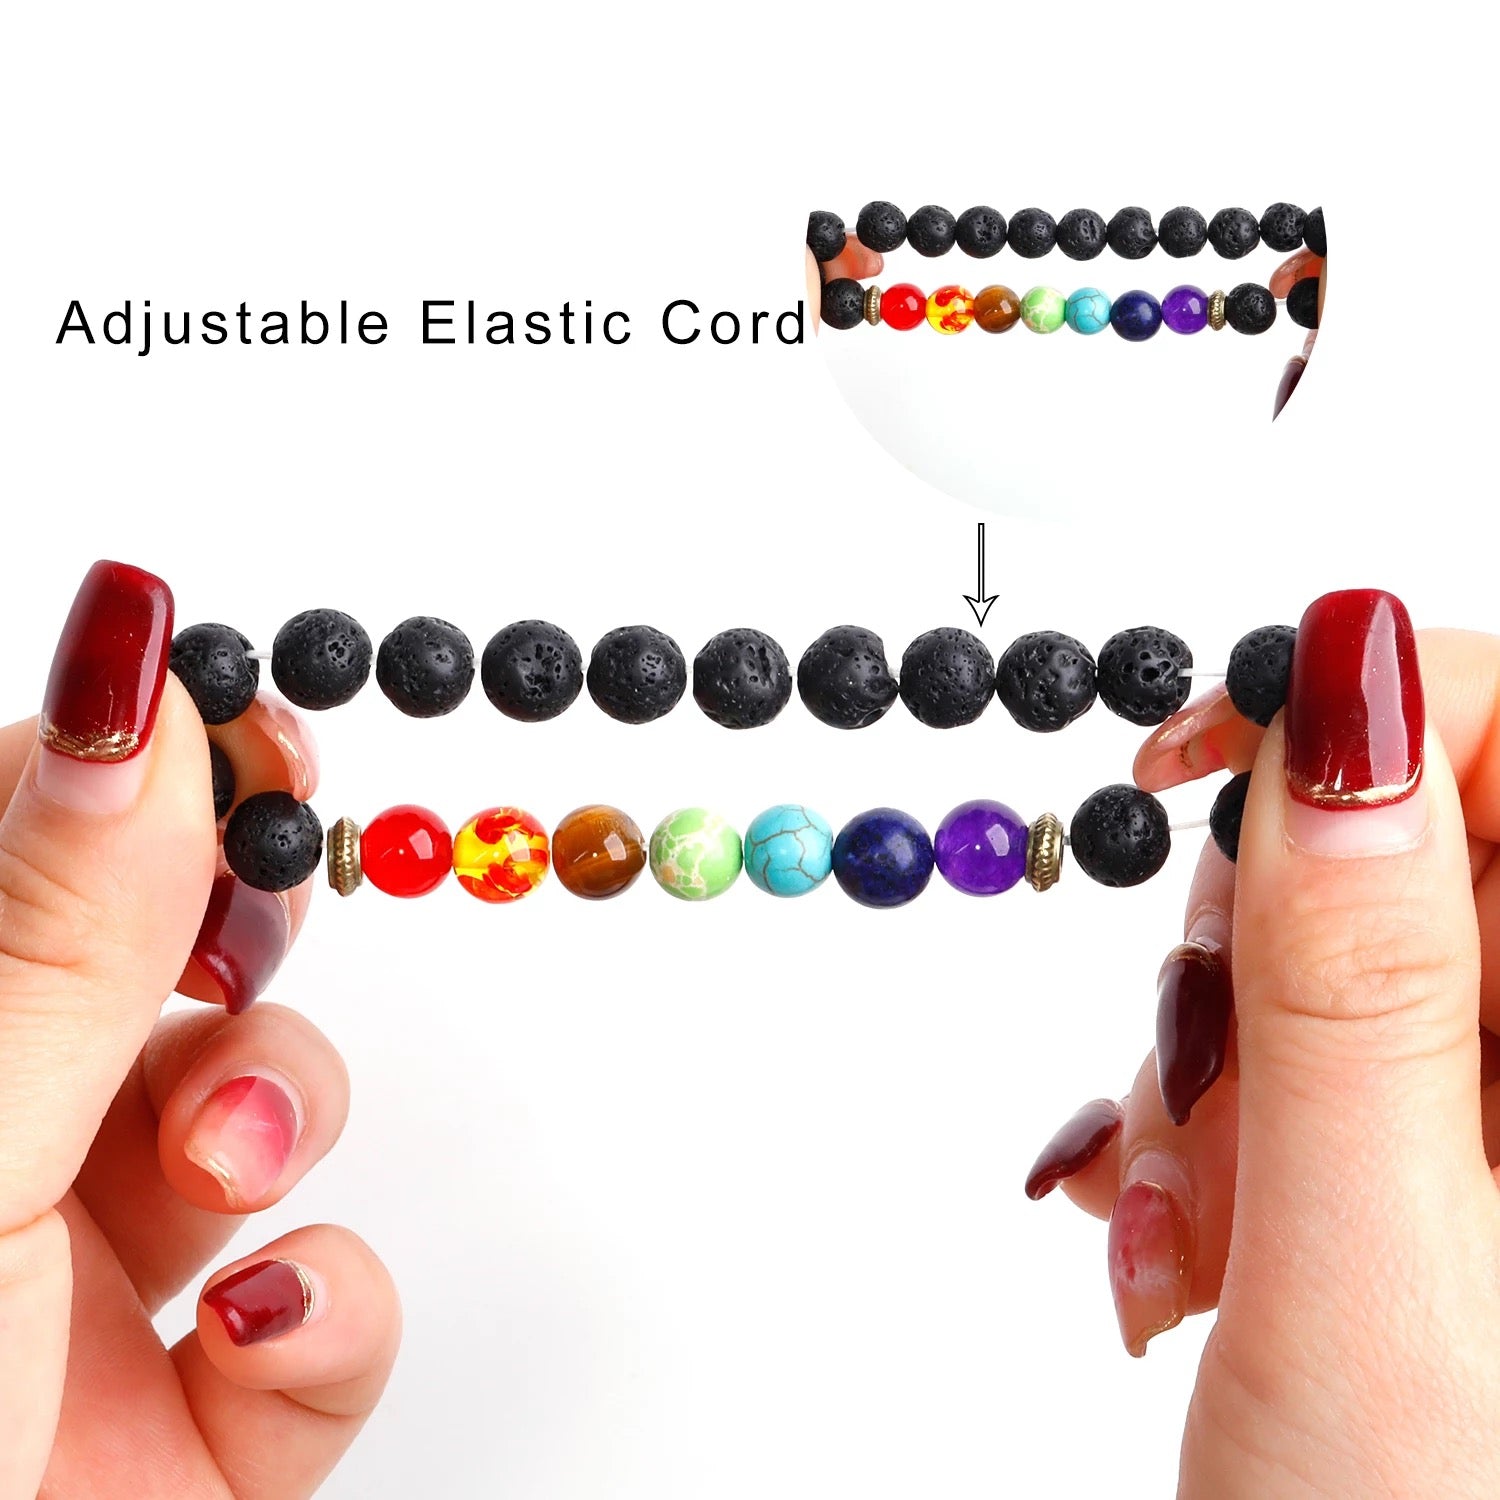 7 Chakras Healing Bracelet | Black Lava beads | Oil diffuser bracelet